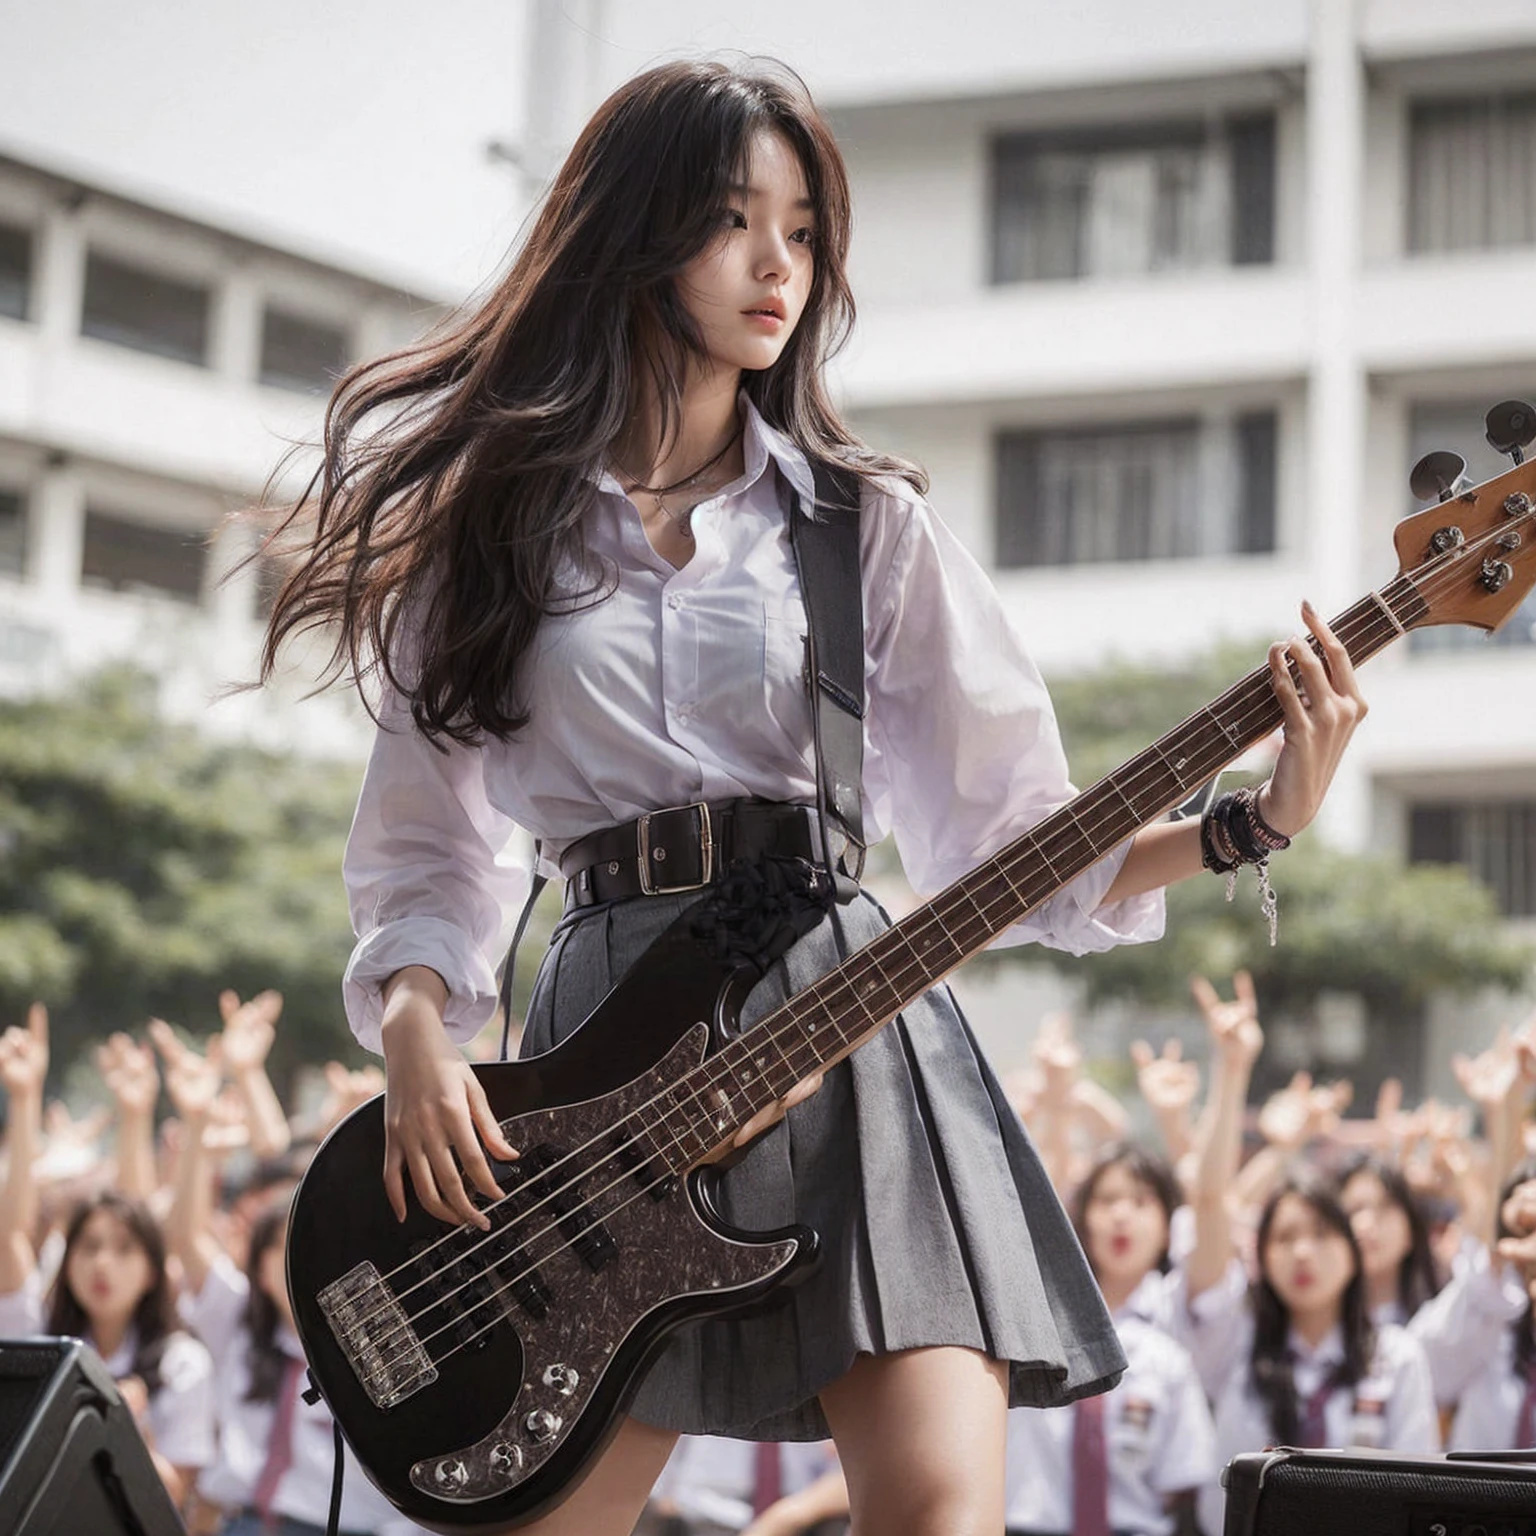 นี่คือคำแปลเป็นภาษาอังกฤษ:

"สาวเกาหลีที่สวยงาม, อายุ 18 ปี, สูง, ผิวขาว, หน้าอกปานกลาง, กำลังเล่นกีตาร์เบส, การแสดงบนเวทีโรงเรียนมัธยมในเมืองสุราบายา, เด็กนักเรียนหลายคนกำลังดูอยู่, สวมชุดสูง , เสื้อเชิ้ตสีขาว, เข็มขัด, และกระโปรงสีเทา, กระโดดไปมา, ปวดหัว, ผลงานชิ้นเอก, ภาพที่สมจริง, เอชดี, 4เค, ใบหน้าที่มีรายละเอียด, ดวงตาที่มีรายละเอียด, ทรงผมยุ่ง"